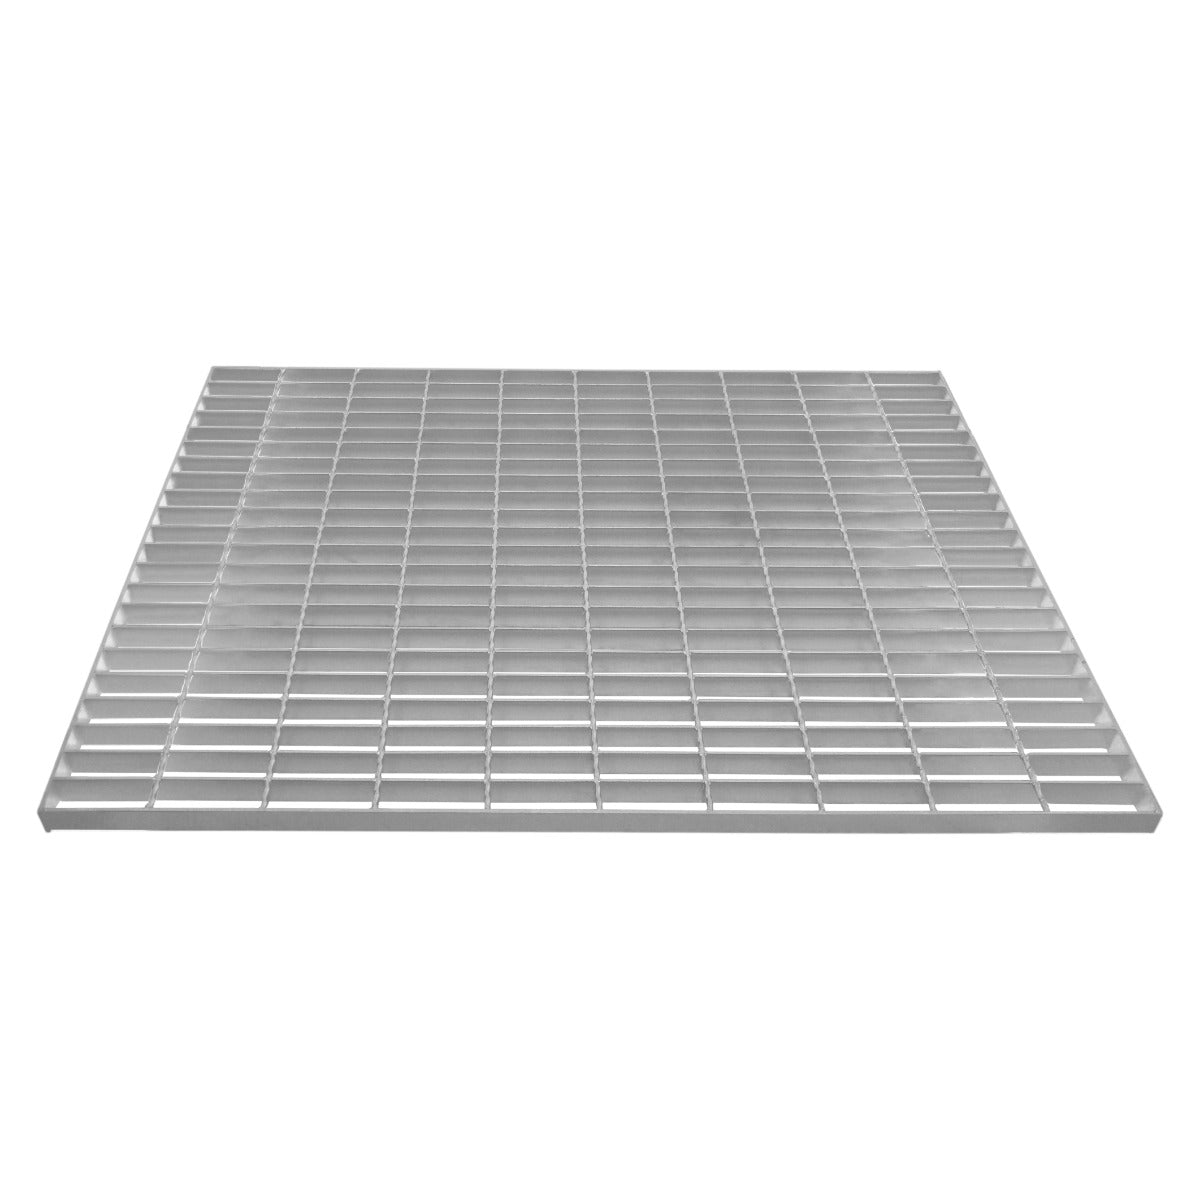 Griglia passerella in acciaio zincato griglia pavimento con scarico grigliato 1000 mm x 800 mm